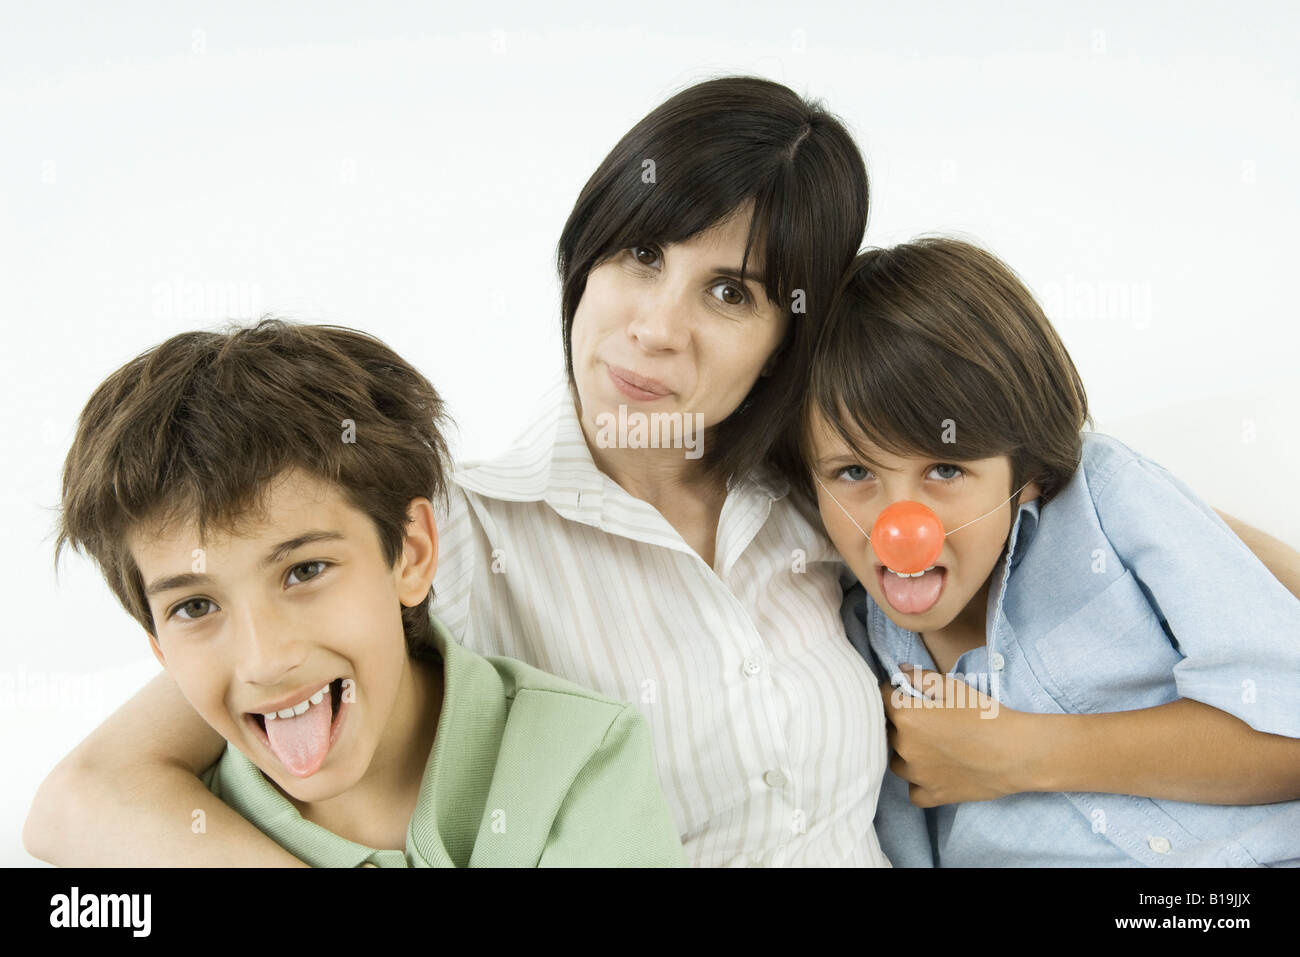 La mère et les deux fils, les garçons sortent leurs langues, l'un portant des nez de clown Banque D'Images